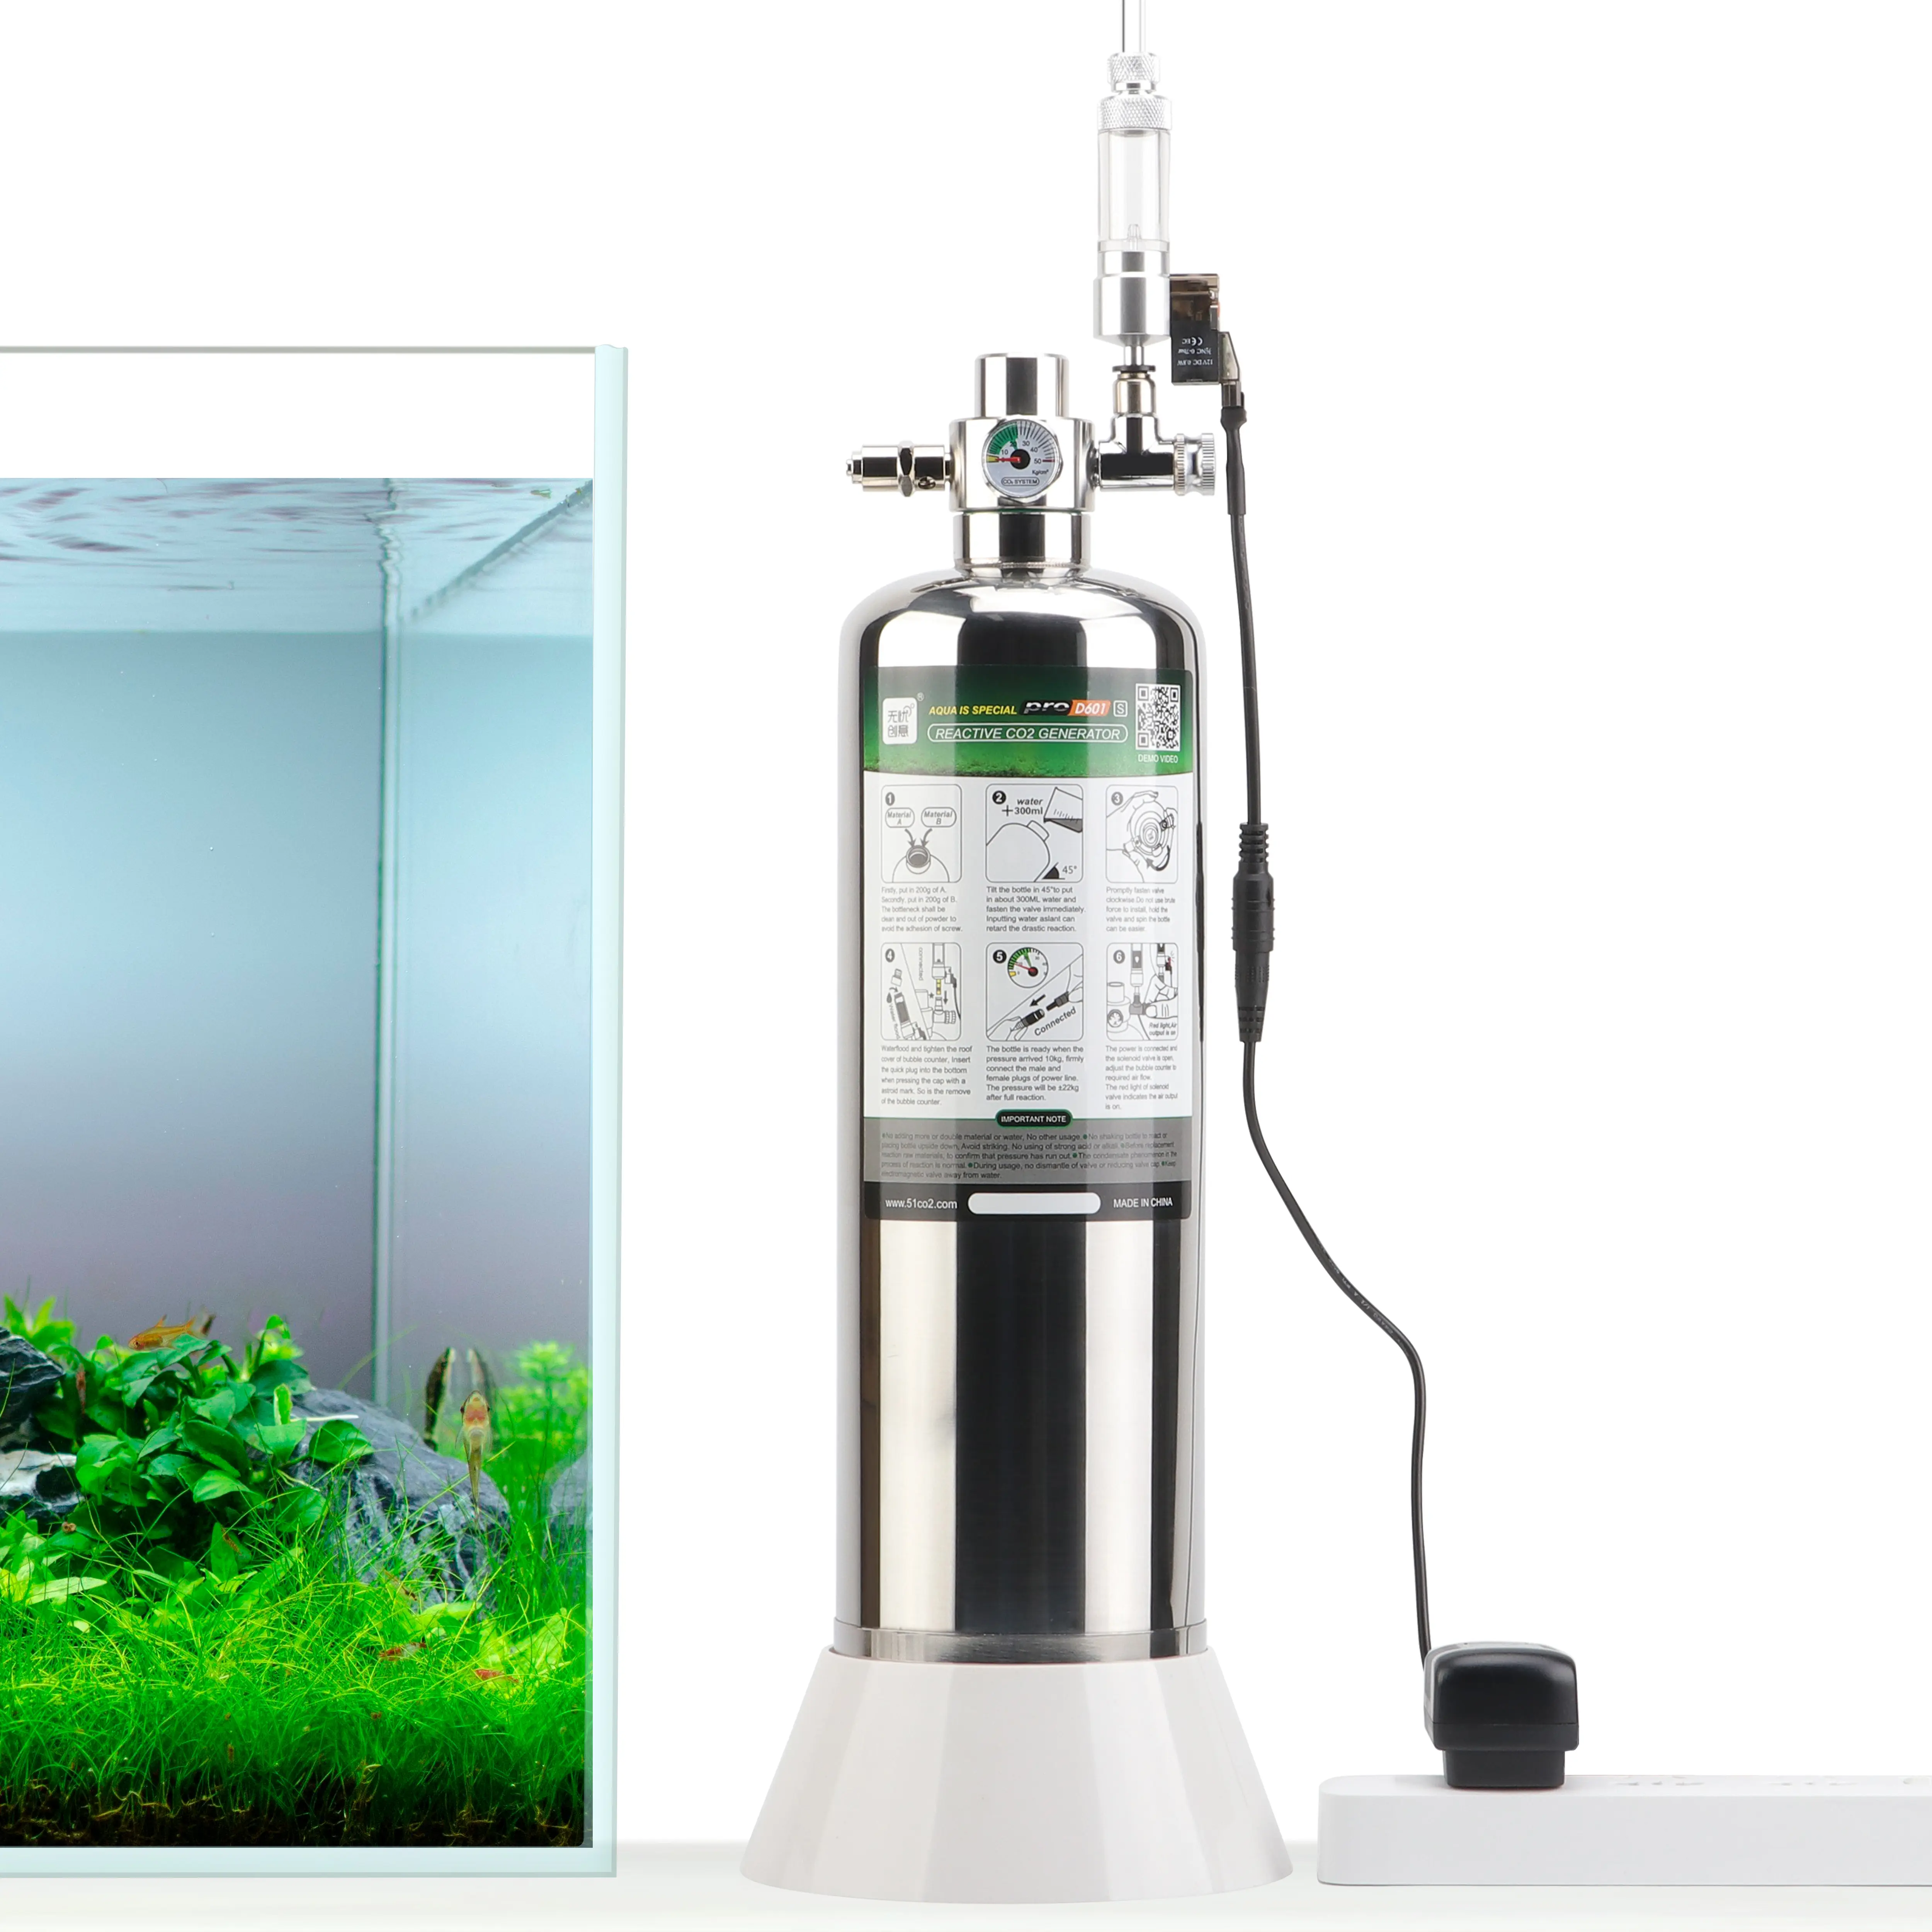 UUIDEAR मछलीघर DIY CO2 जनरेटर प्रणाली किट के साथ दबाव हवा का प्रवाह समायोजन पानी संयंत्र मछली मछलीघर Co2 गैस सिलेंडर